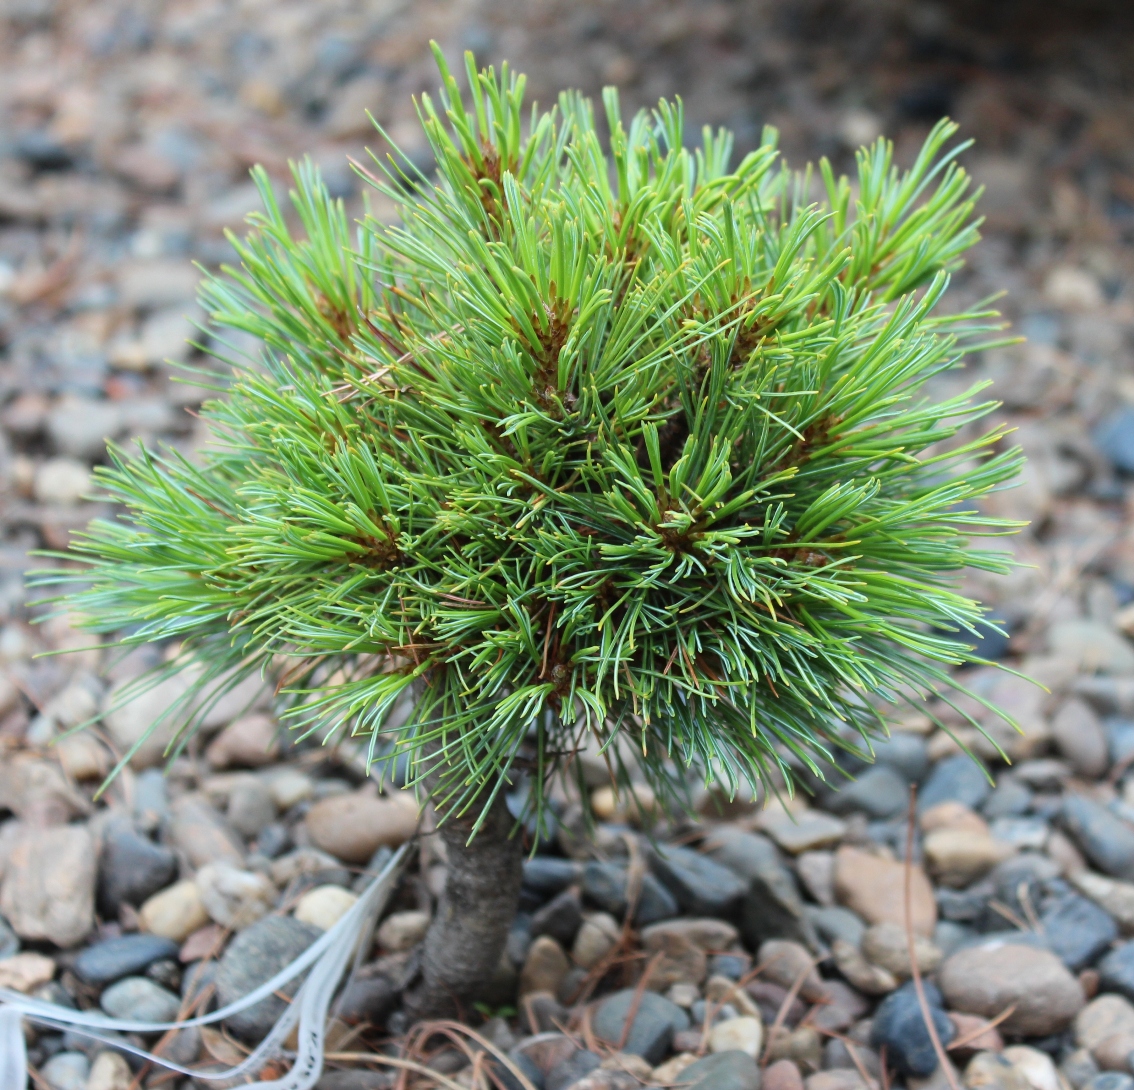 Pinus pumila ‘Алханай’. Одна из немногих ВМ на кедровом стланике. 6-летняя прививка на кедре сибирском. Высота 14, диаметр 17 см. Форма – сплюснутый и слегка перекошенный в одну сторону эллипсоид. Клон симпатичный, перспективный.